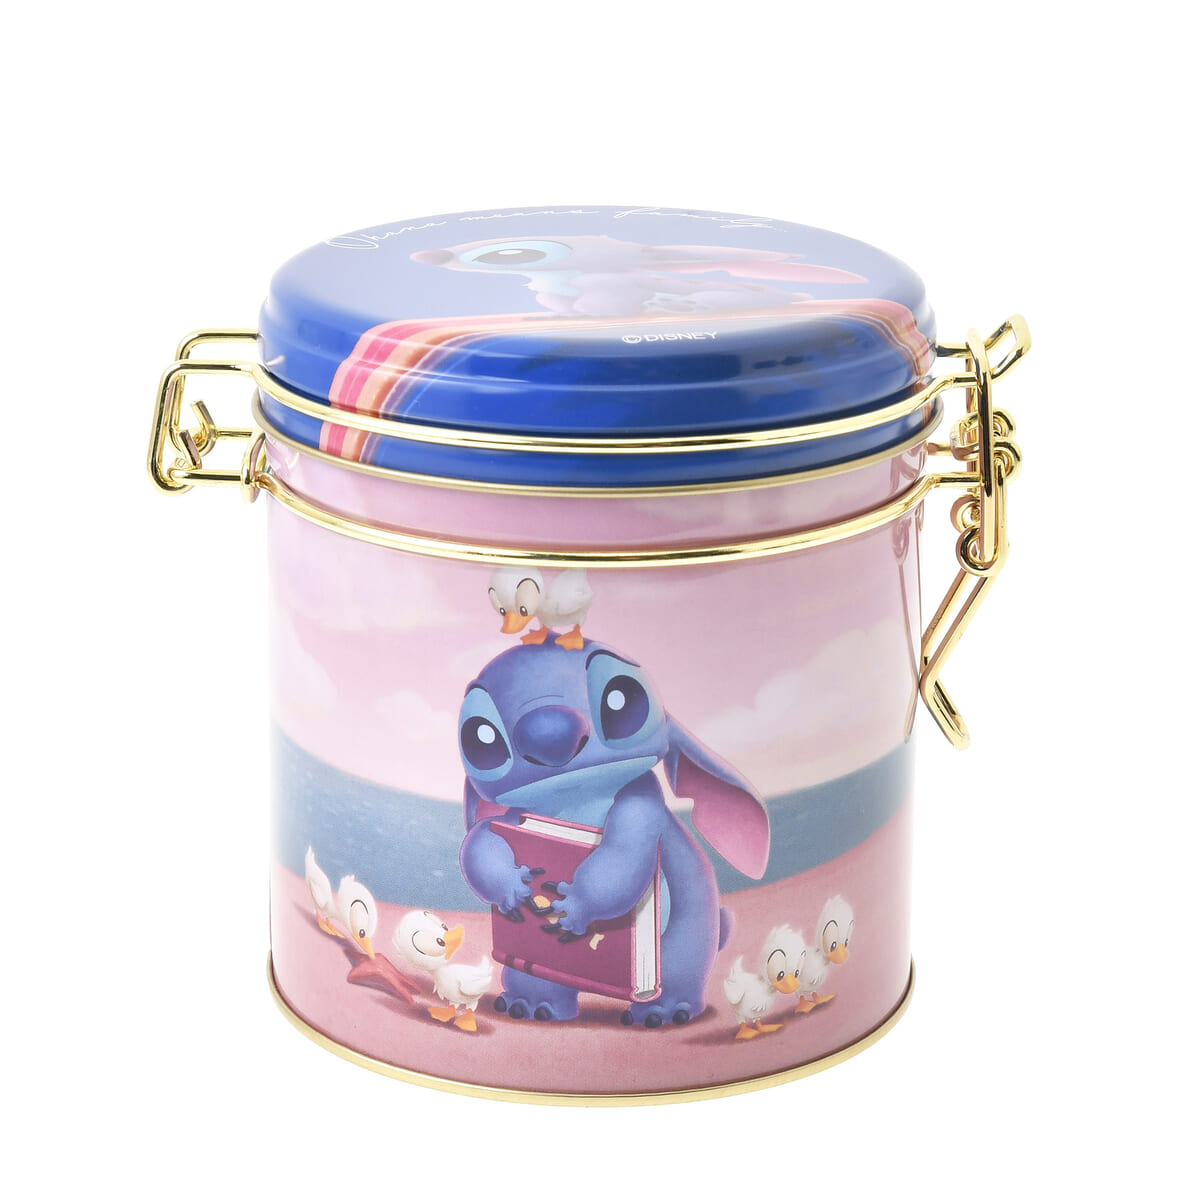 スティッチ クッキー キャニスター缶入り Disney Stitch Day Collection03